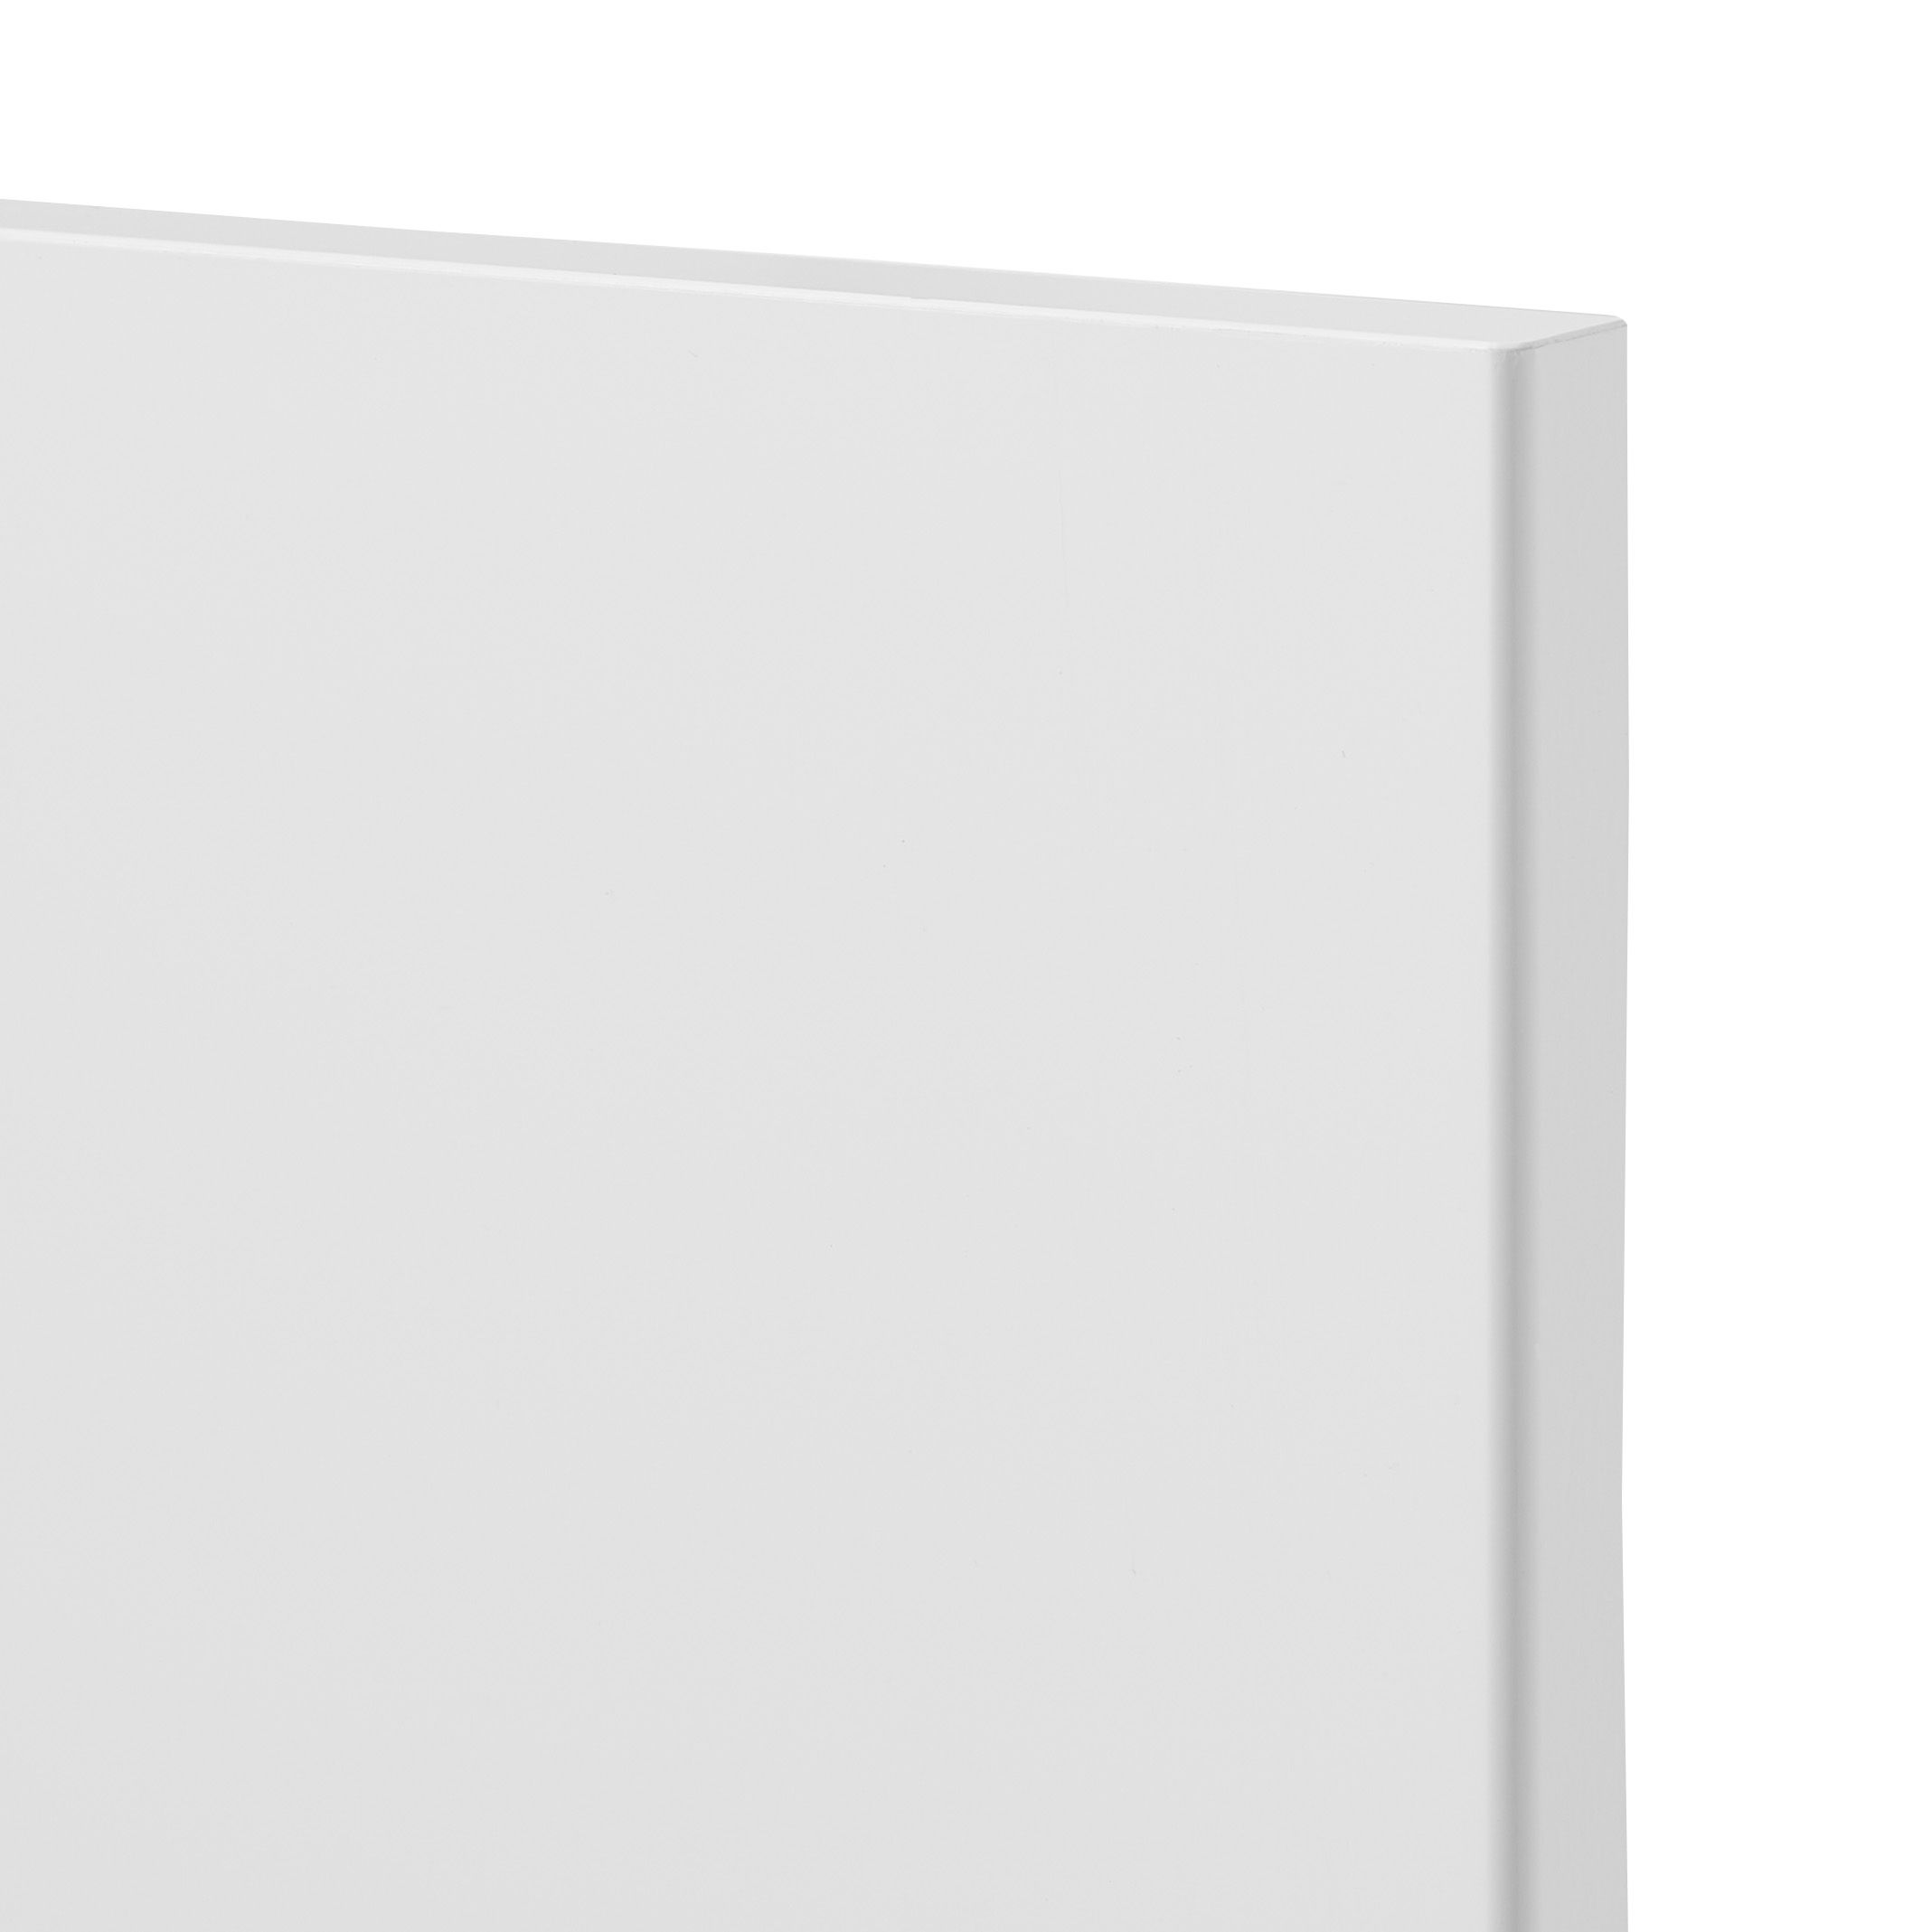 GoodHome Stevia Gloss white slab Tall larder Cabinet door (W)600mm (H)1467mm (T)18mm